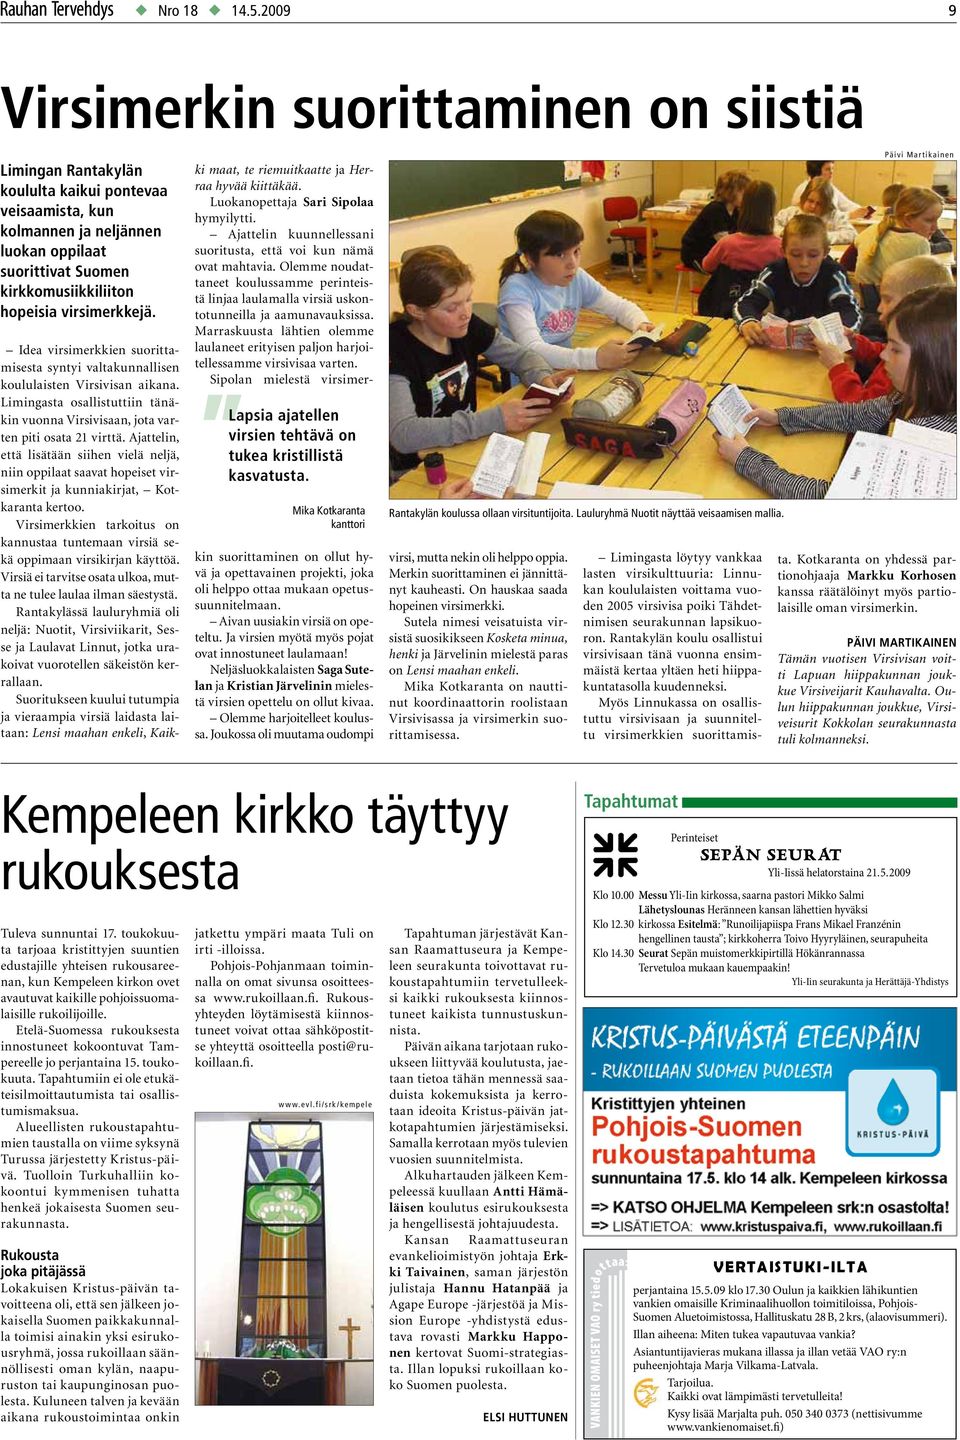 virsimerkkejä. Idea virsimerkkien suorittamisesta syntyi valtakunnallisen koululaisten Virsivisan aikana. Limingasta osallistuttiin tänäkin vuonna Virsivisaan, jota varten piti osata 21 virttä.